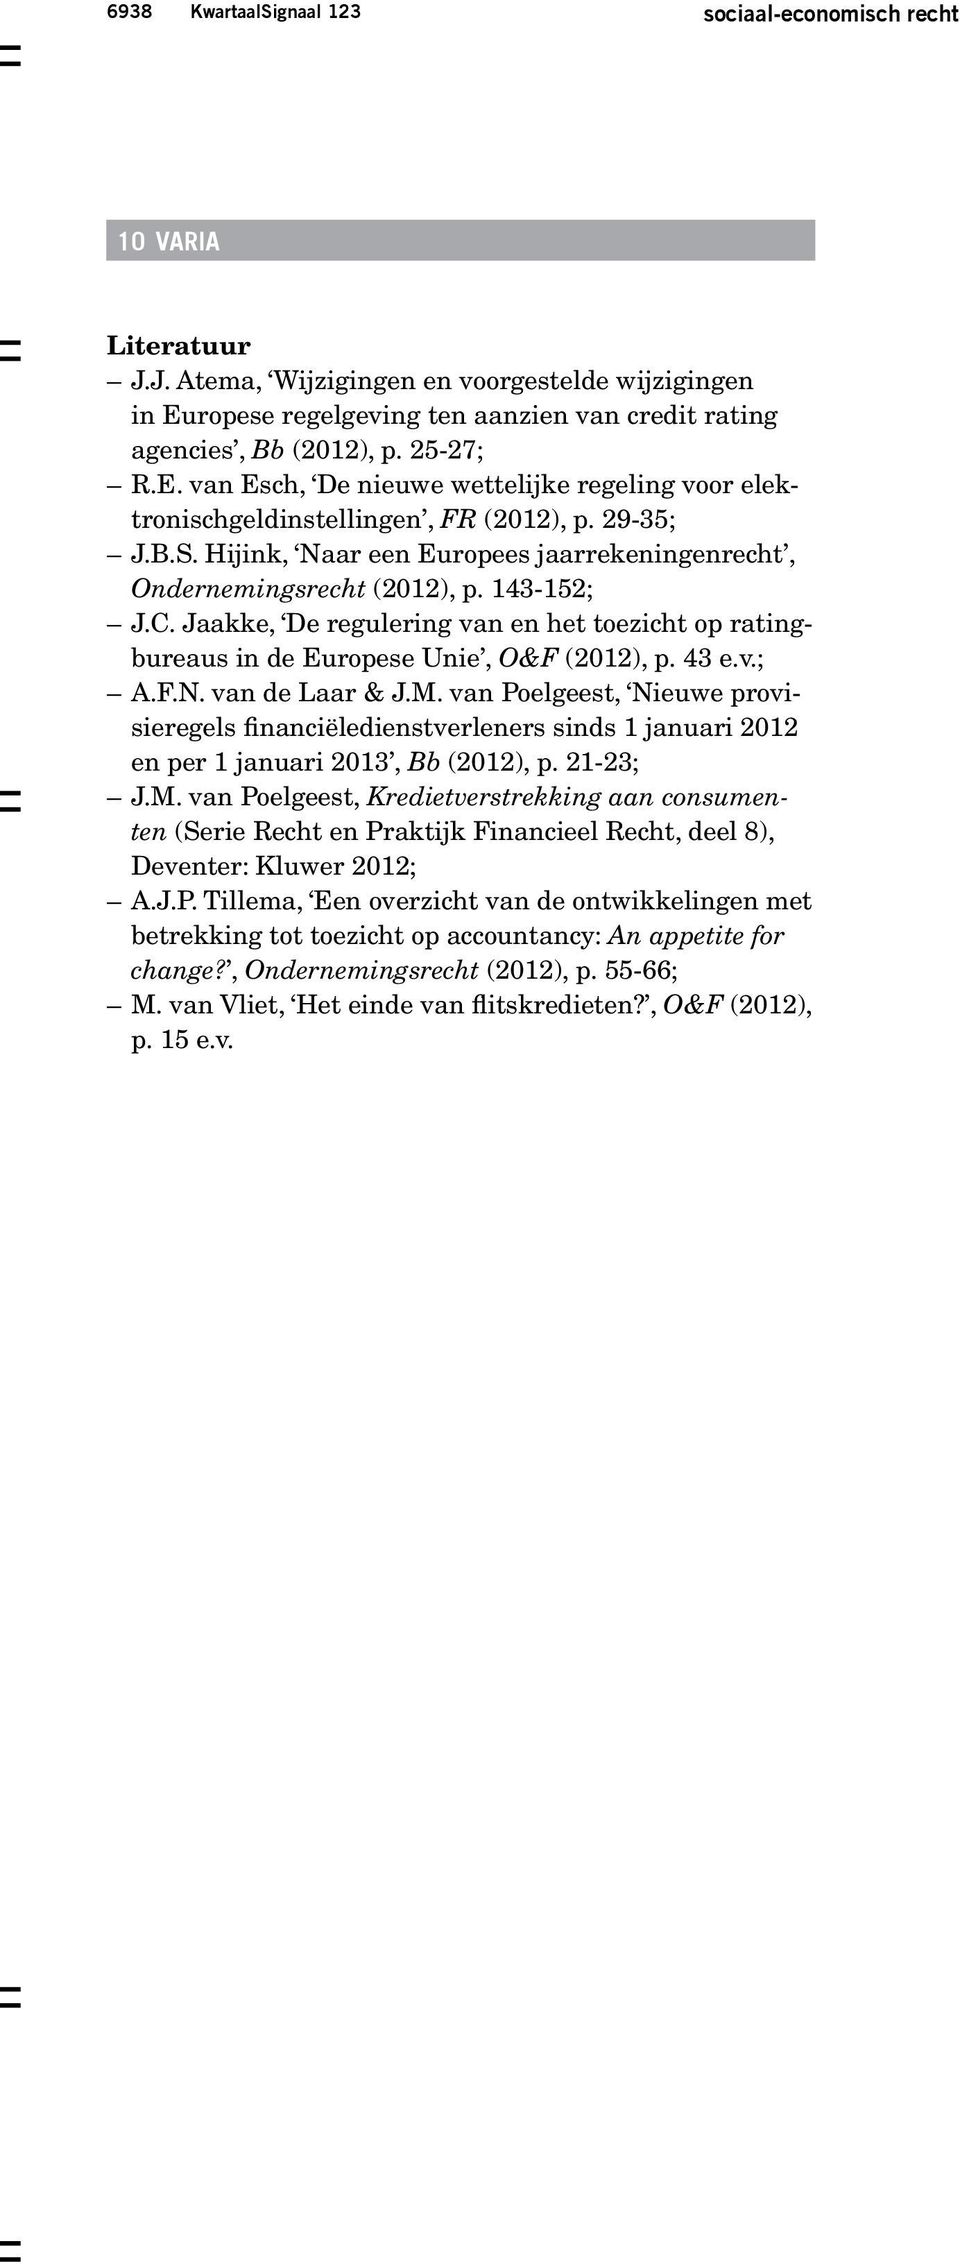 Hijink, Naar een Europees jaarrekeningenrecht, Ondernemingsrecht (2012), p. 143-152; J.C. Jaakke, De regulering van en het toezicht op ratingbureaus in de Europese Unie, O&F (2012), p. 43 e.v.; A.F.N. van de Laar & J.